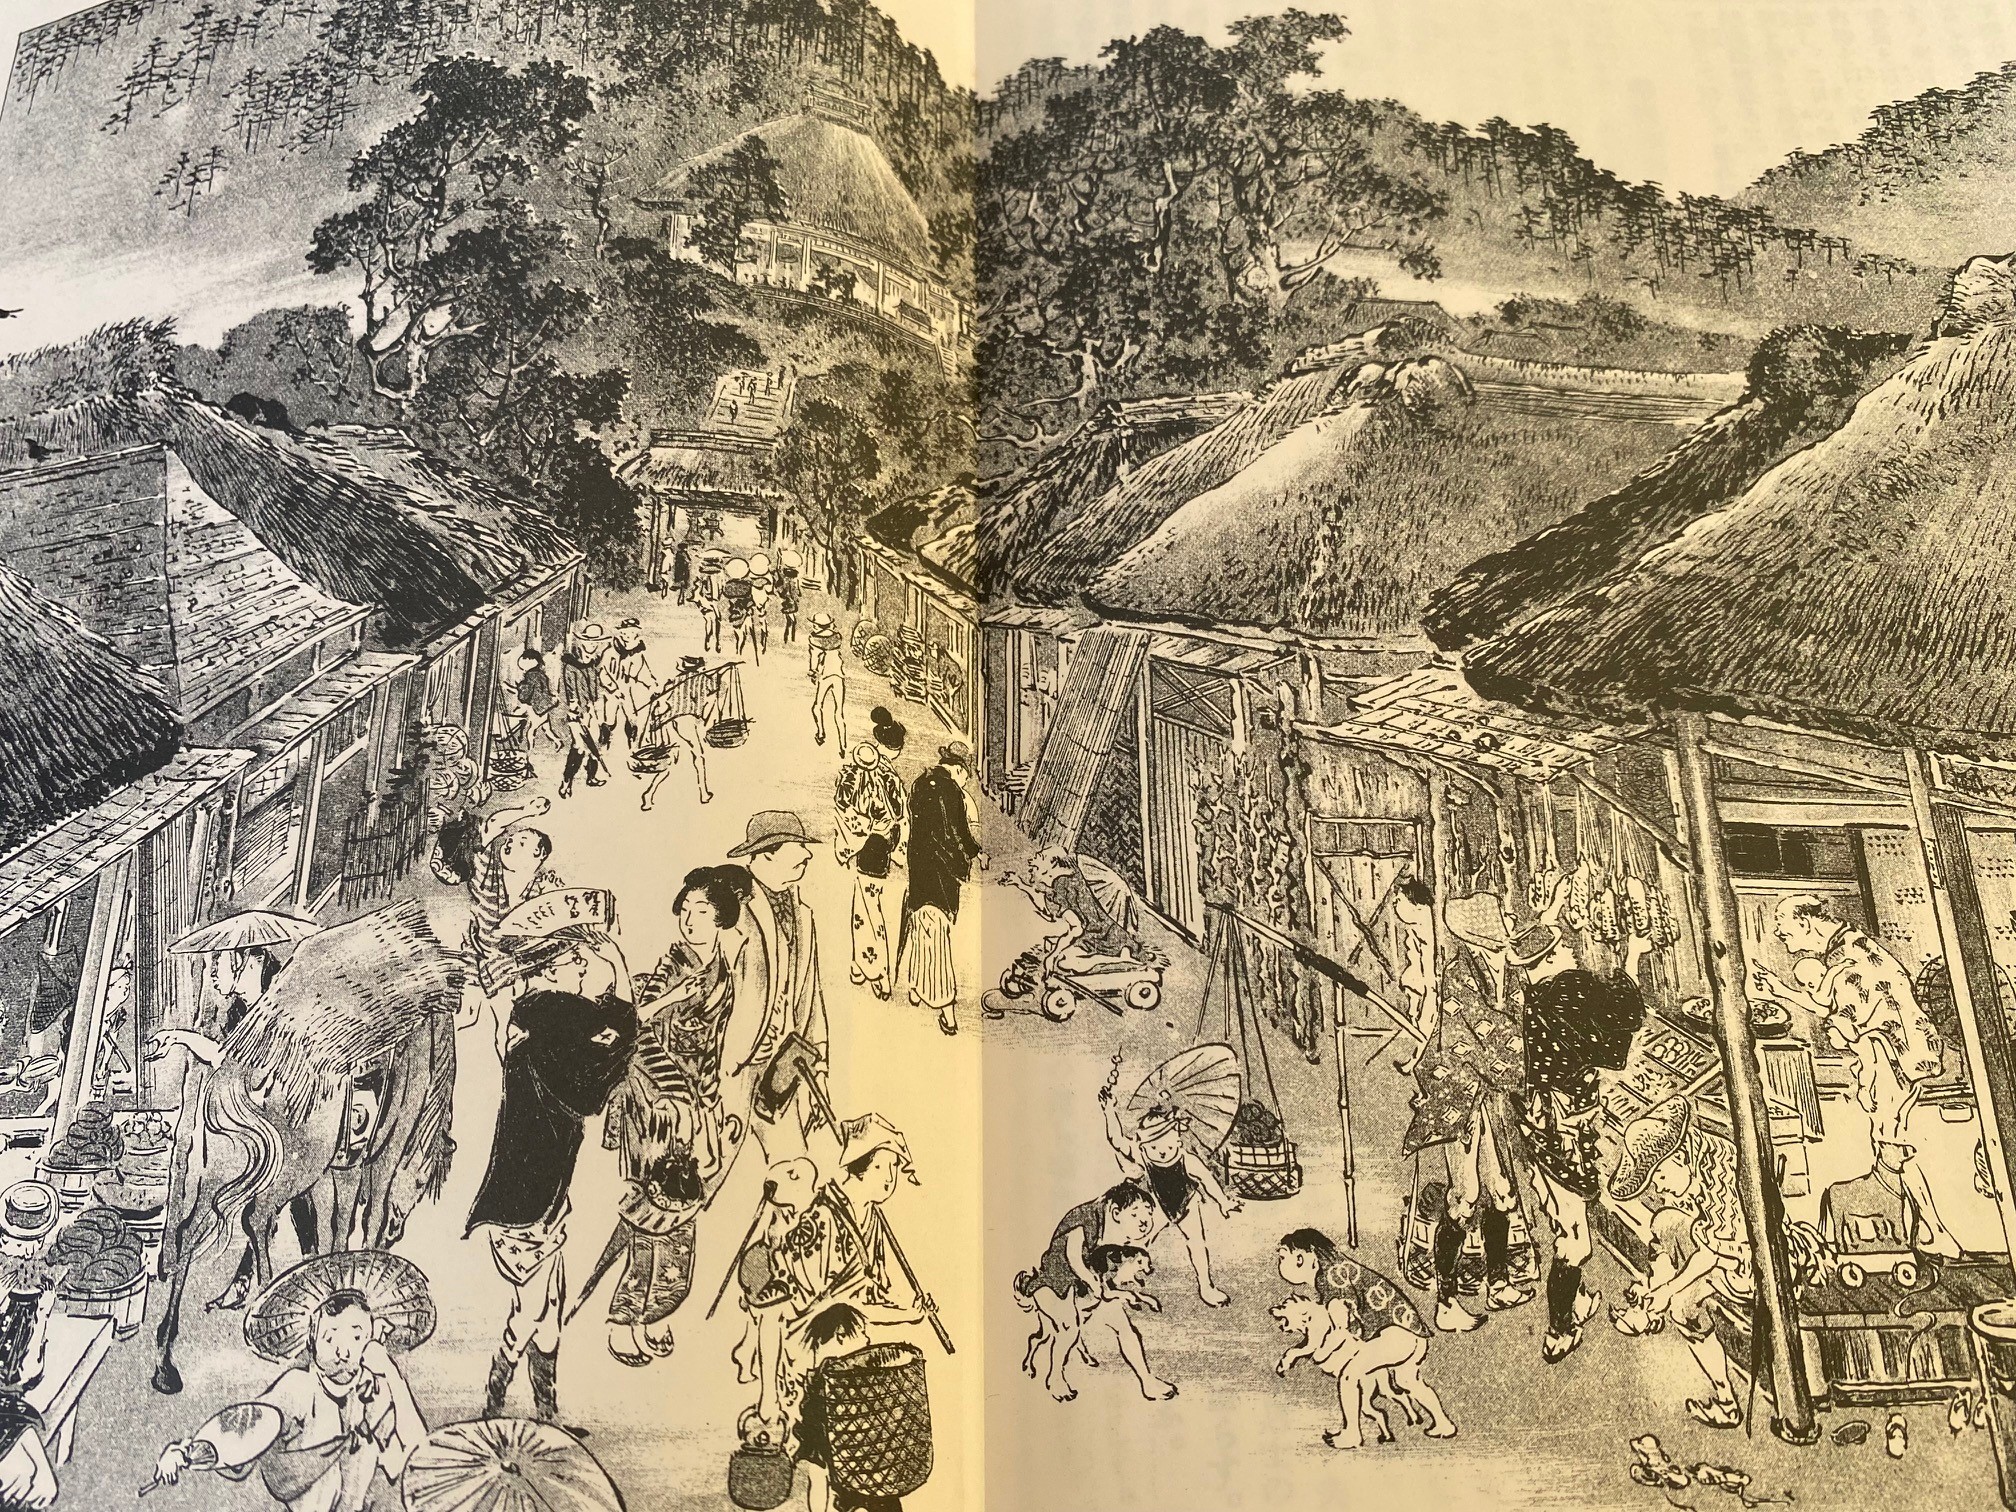 明治時代の鎌倉・江の島ガイドブックより、長谷観音への参道の様子。現在の様子と比べてみてください。歴史ある町での暮らしをお楽しみください。